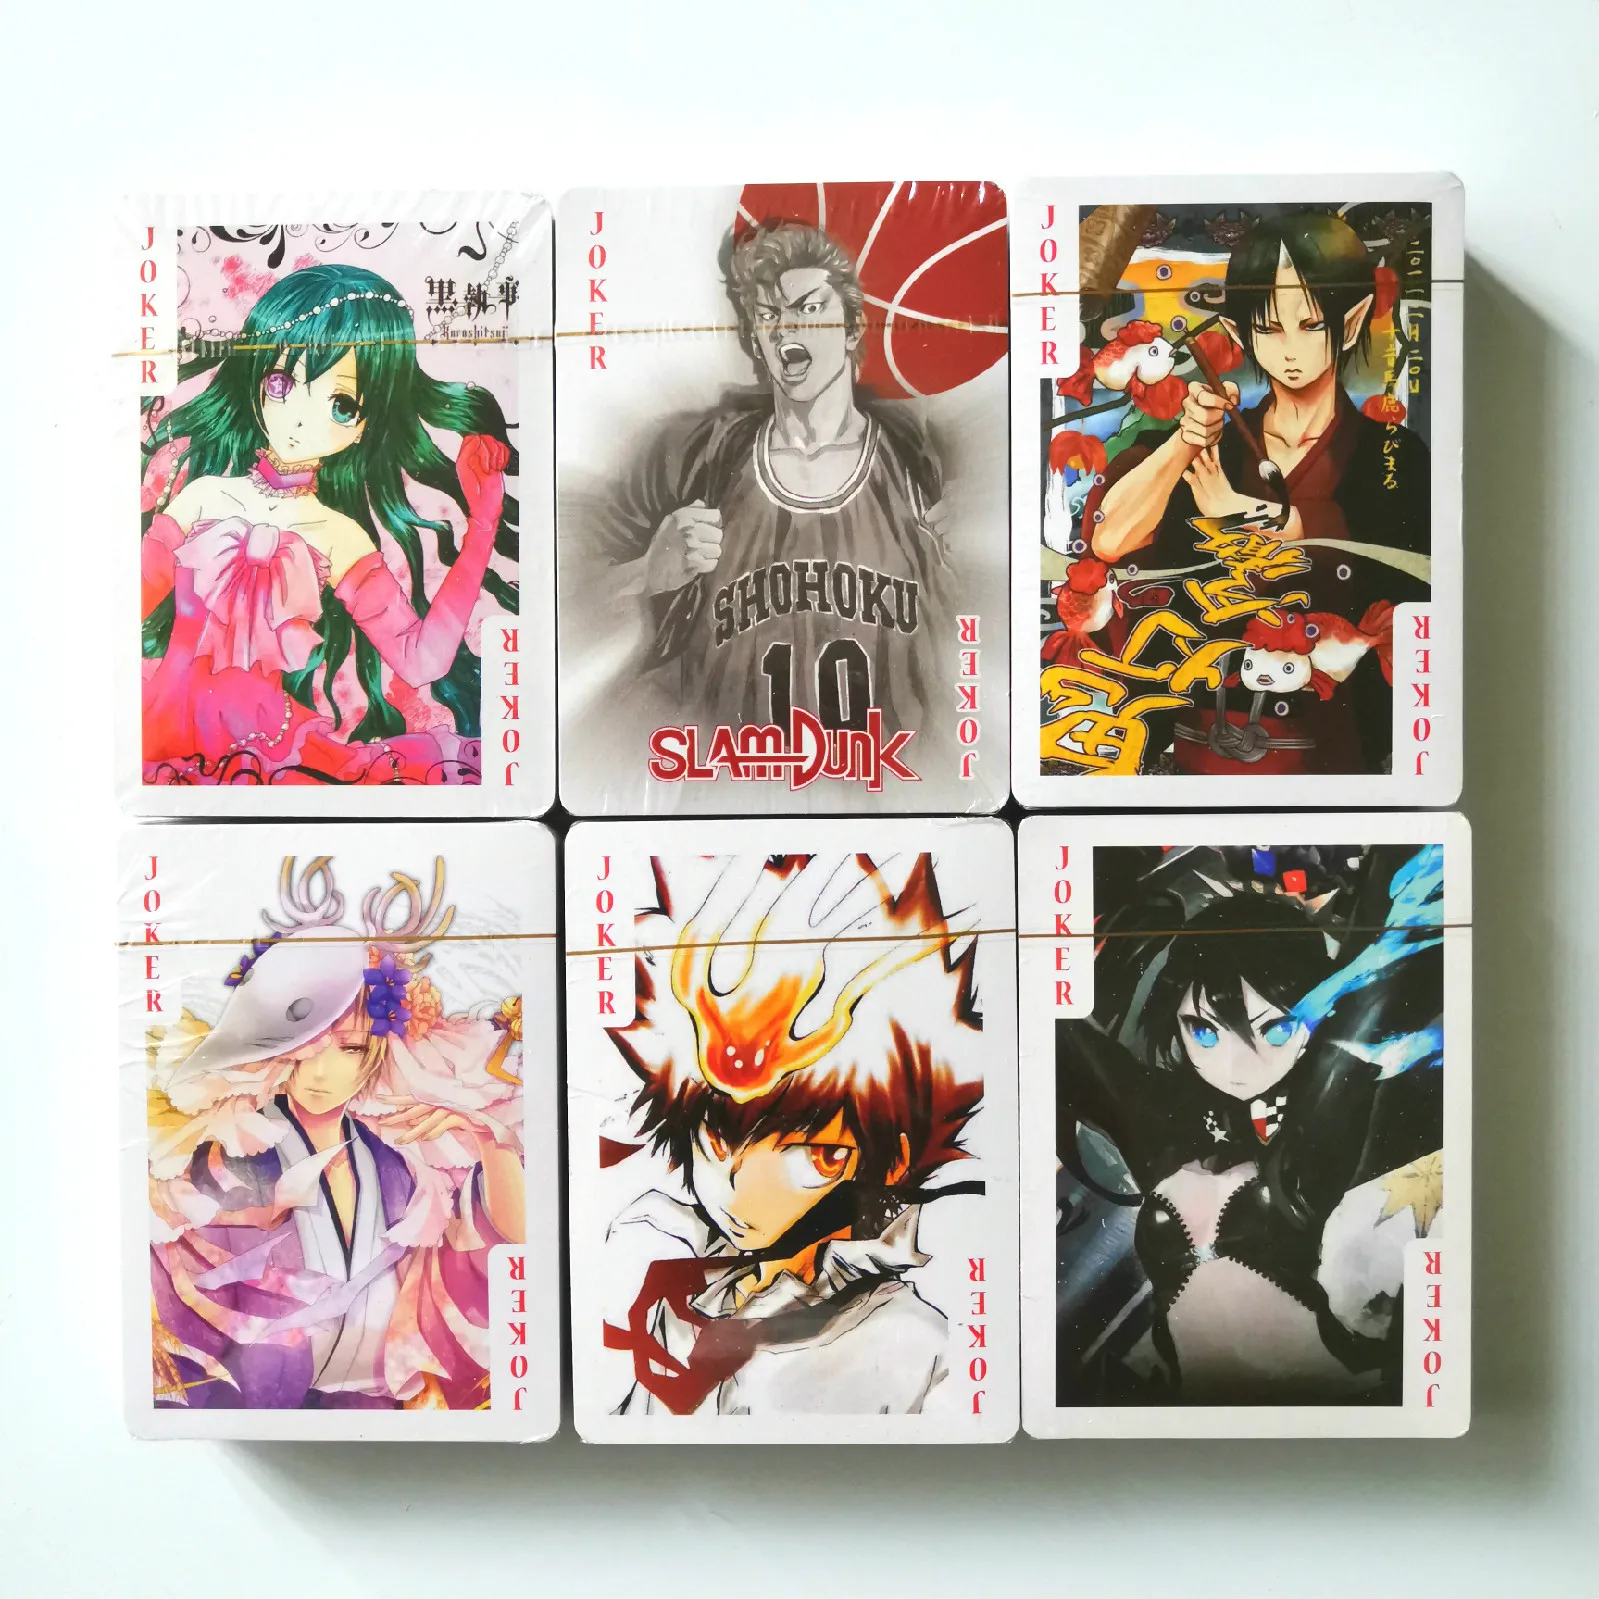 27 стилей Аниме персонаж покер Fate FAIRY TAIL BLACK ROCK SHOOTER игровая коллекция карт |